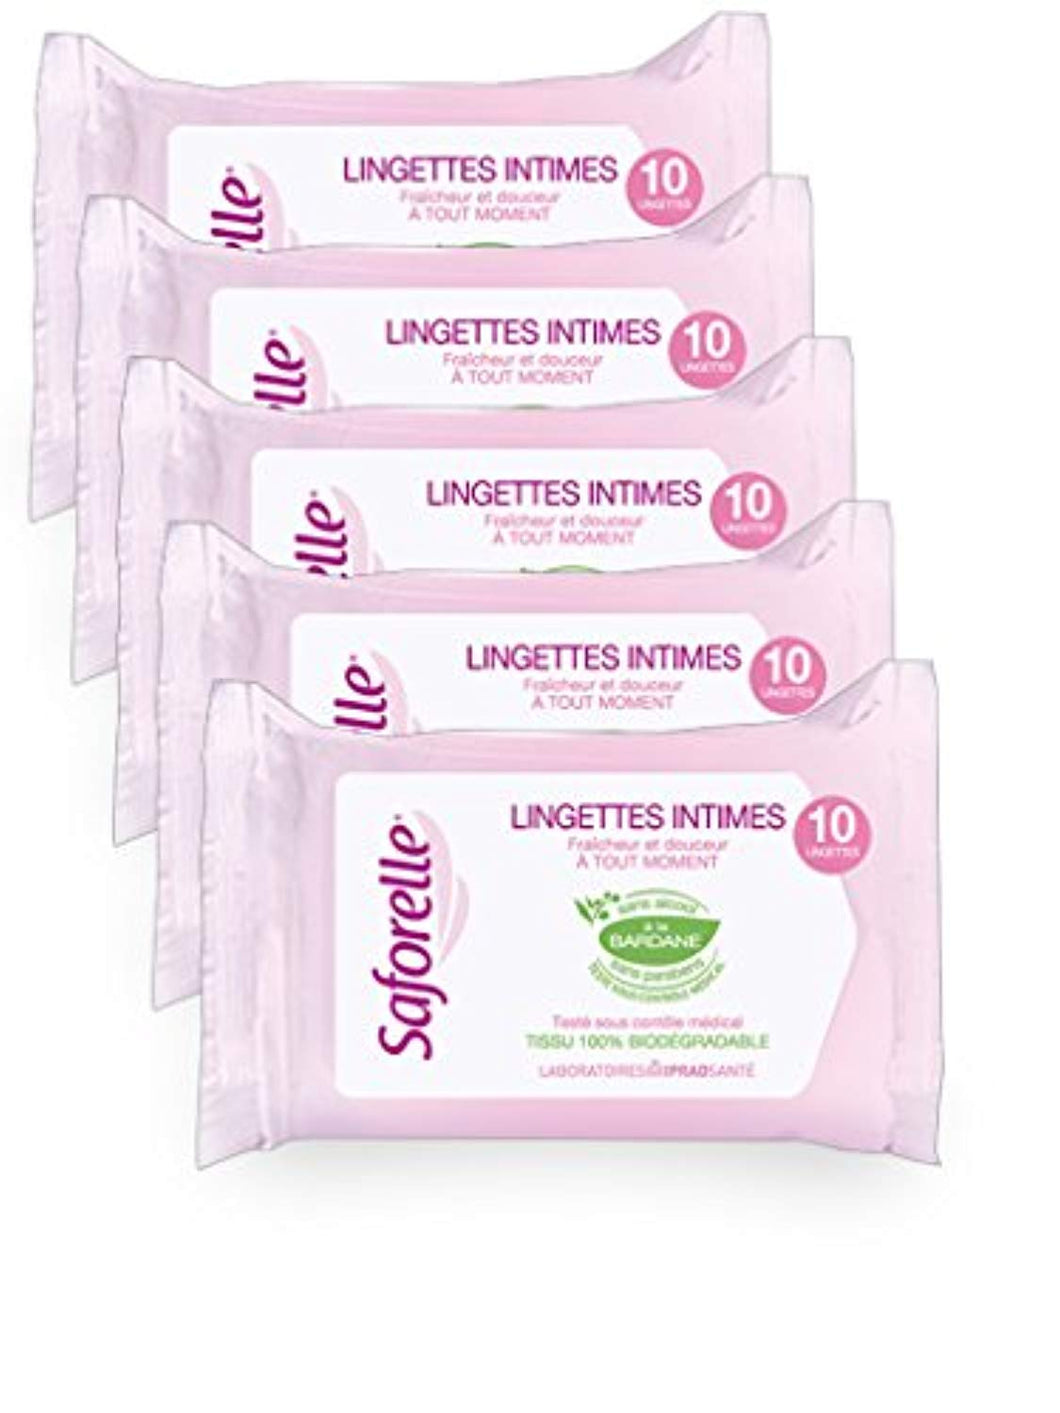 Saforelle Lingettes Intimes Ultra Douces 10 Lingettes - lot de 5 x paquets de 10 Lingettes